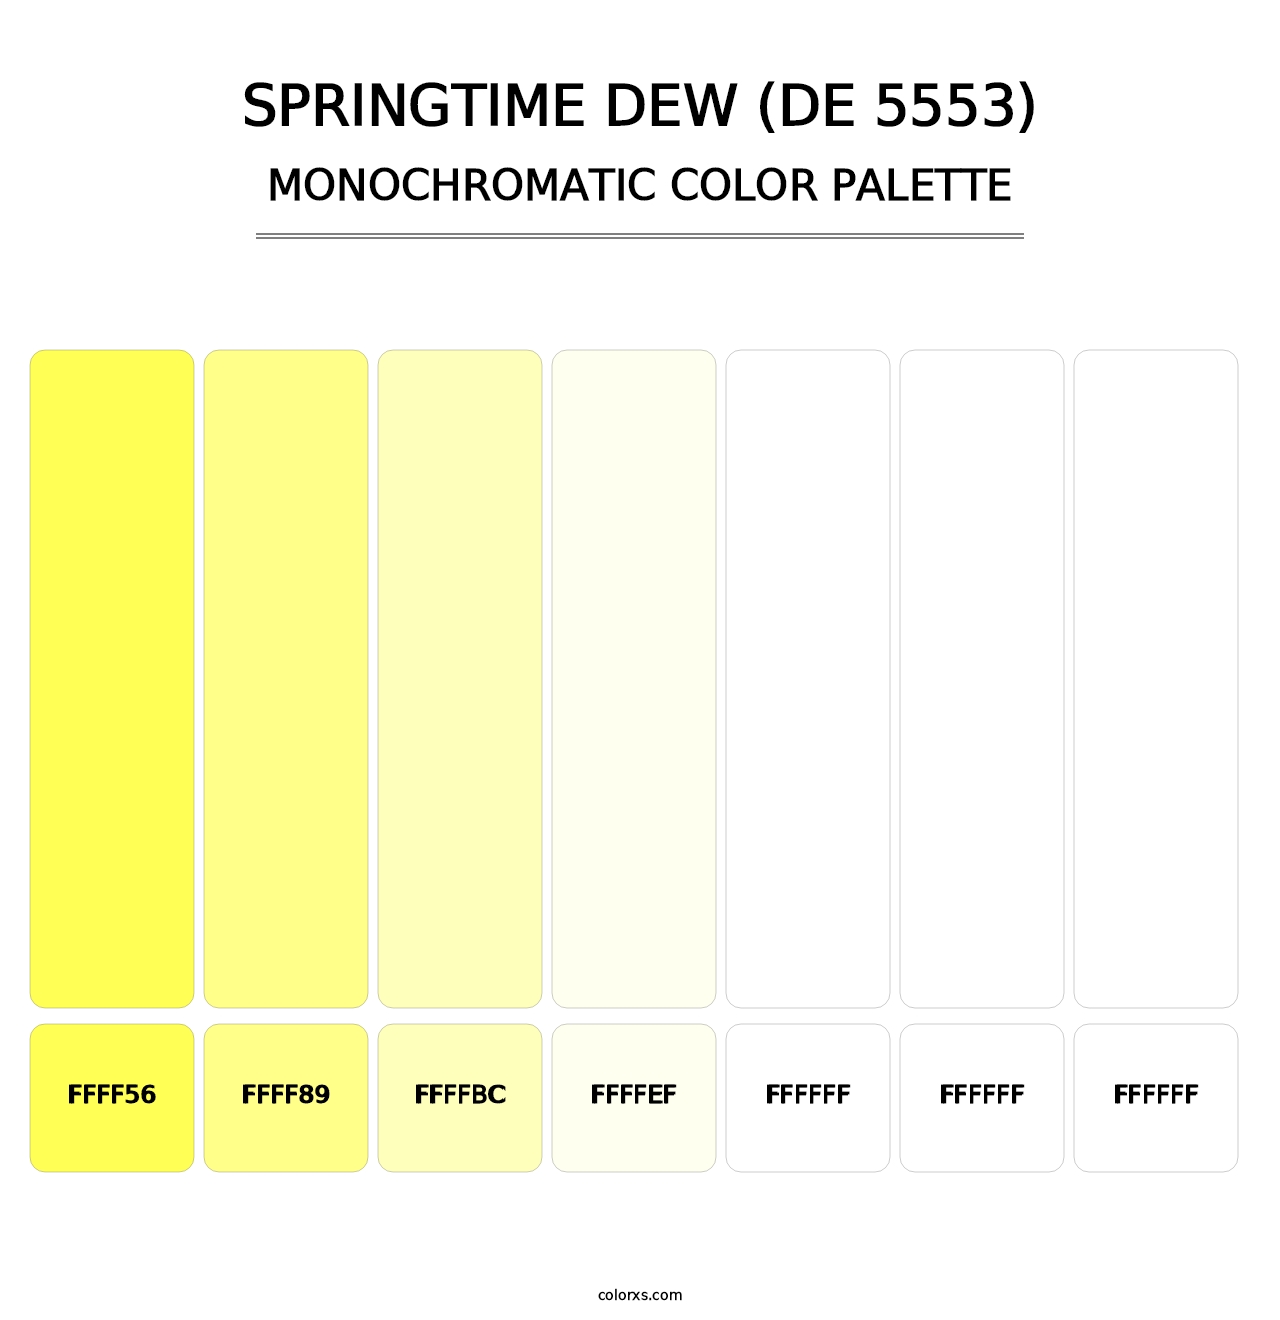 Springtime Dew (DE 5553) - Monochromatic Color Palette